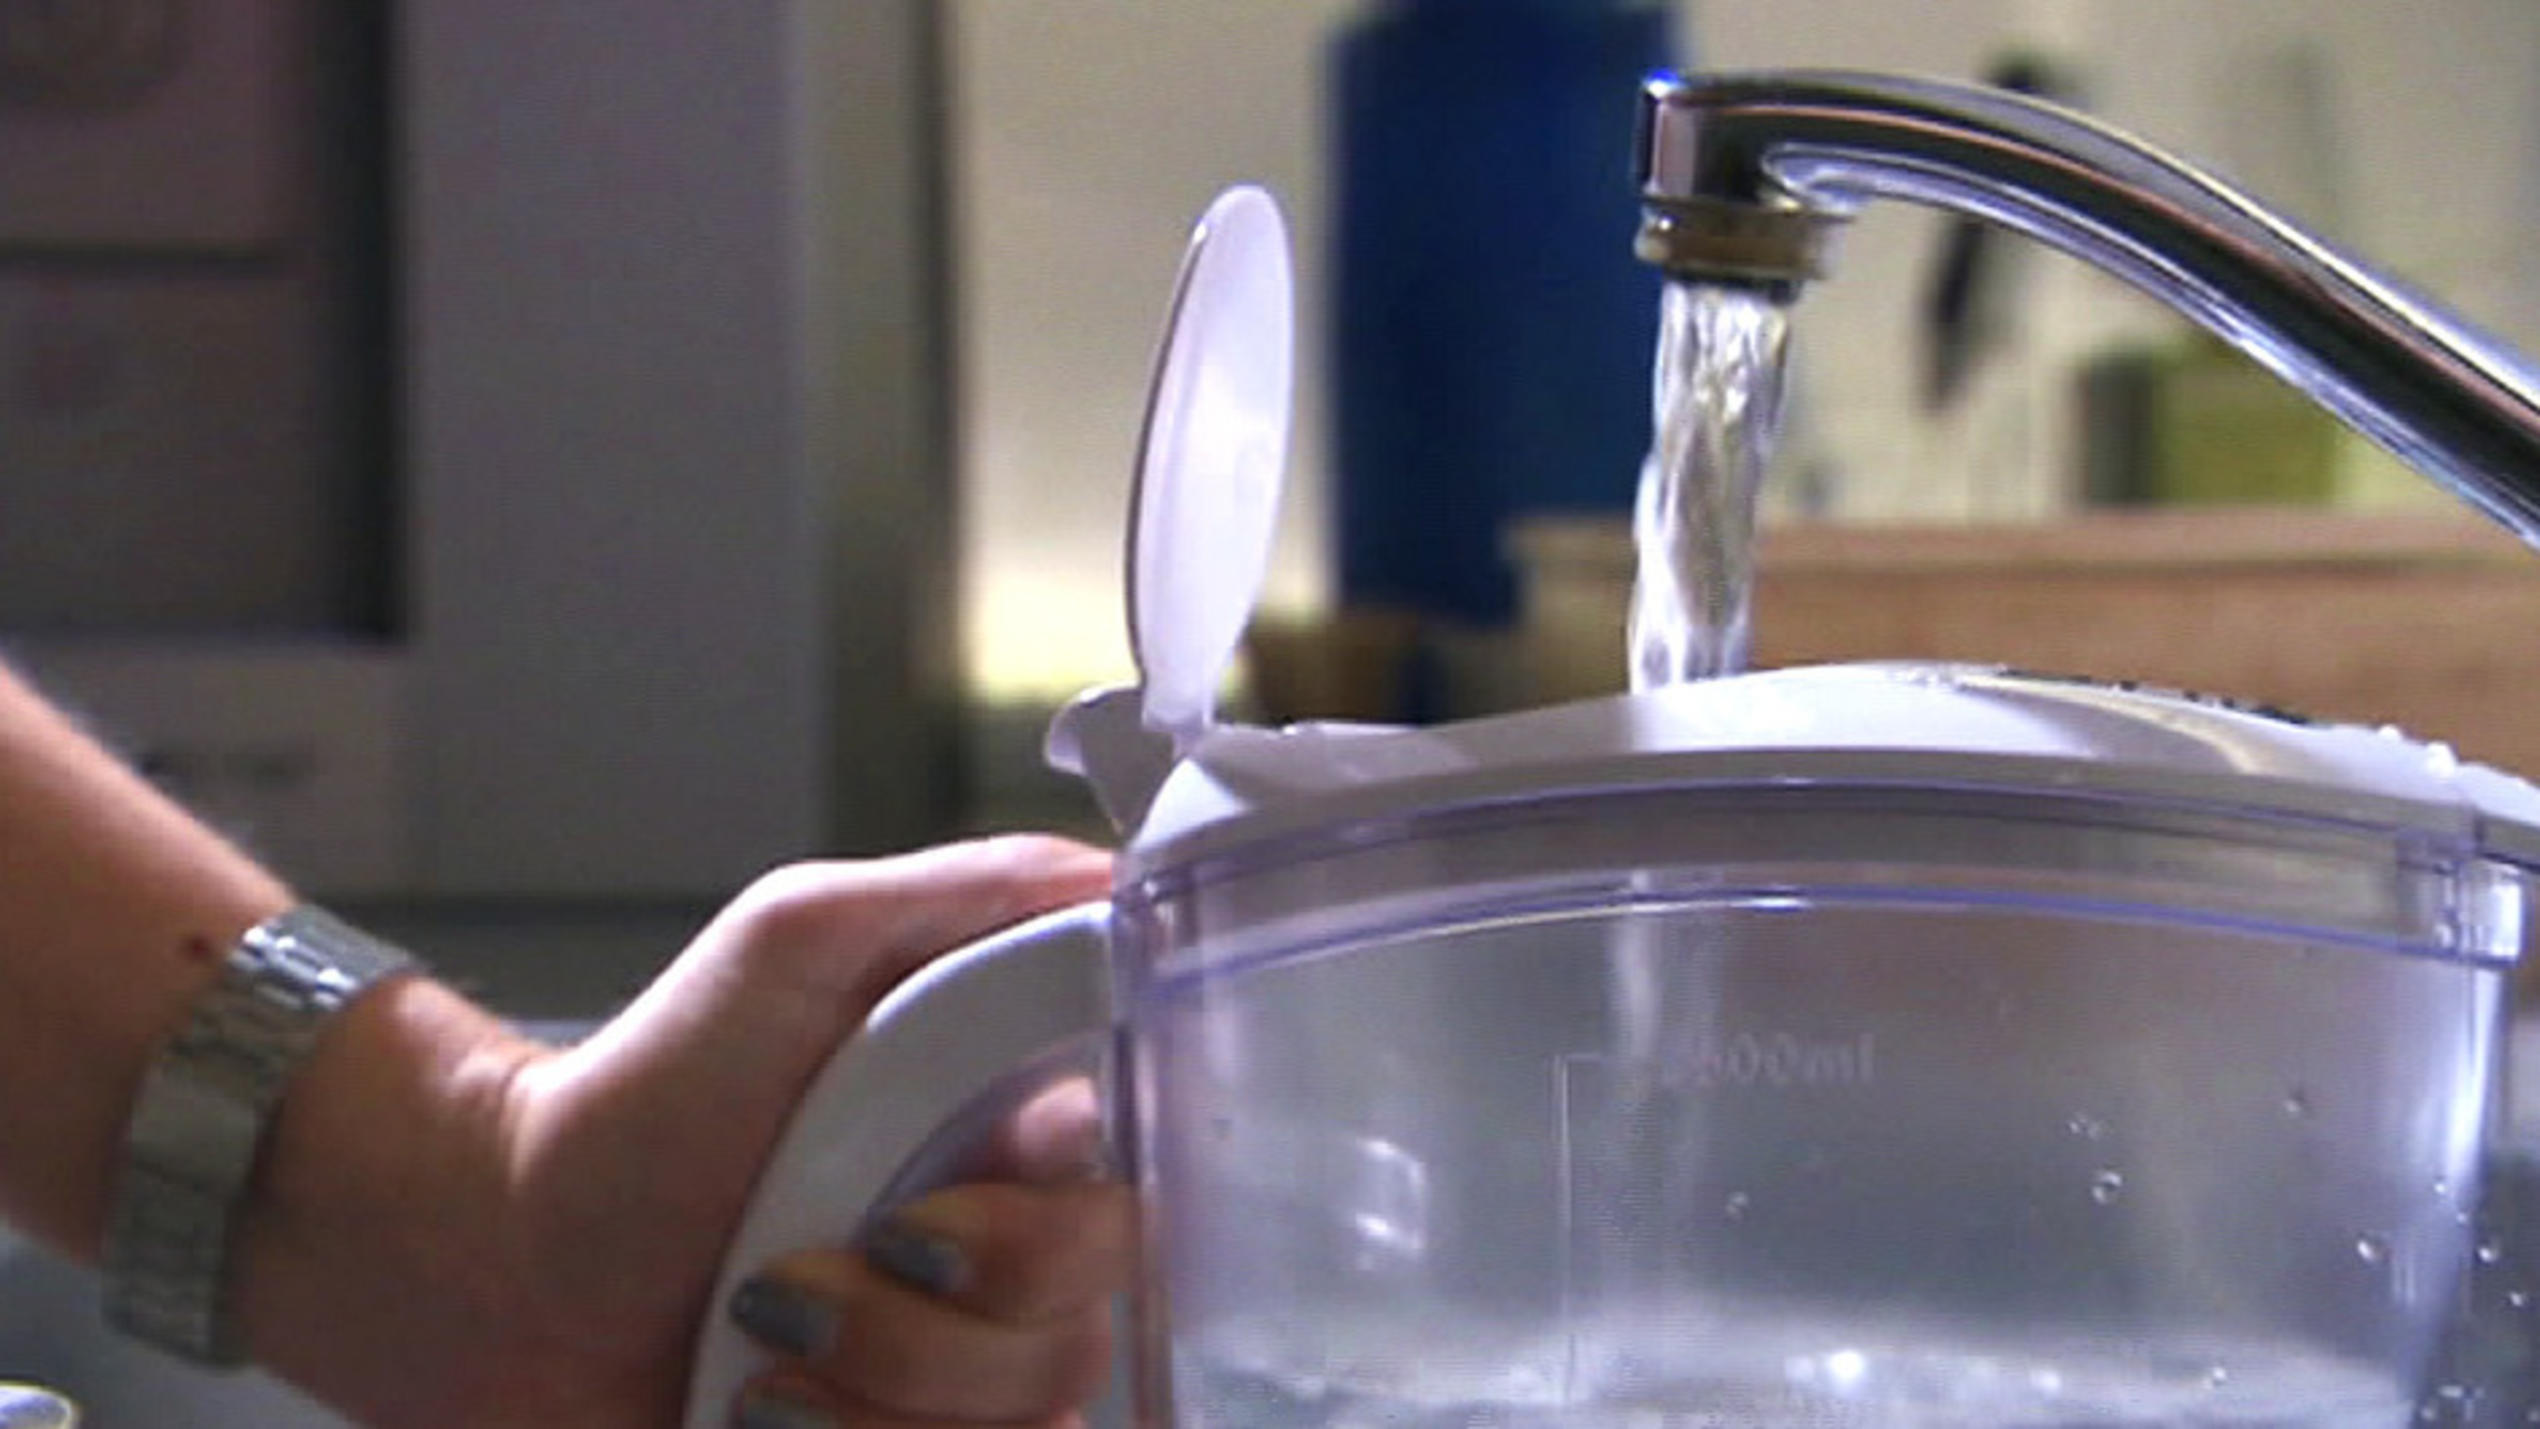 Wasserfilter im Test: Teuerstes Gerät erweist sich als Keimschleuder